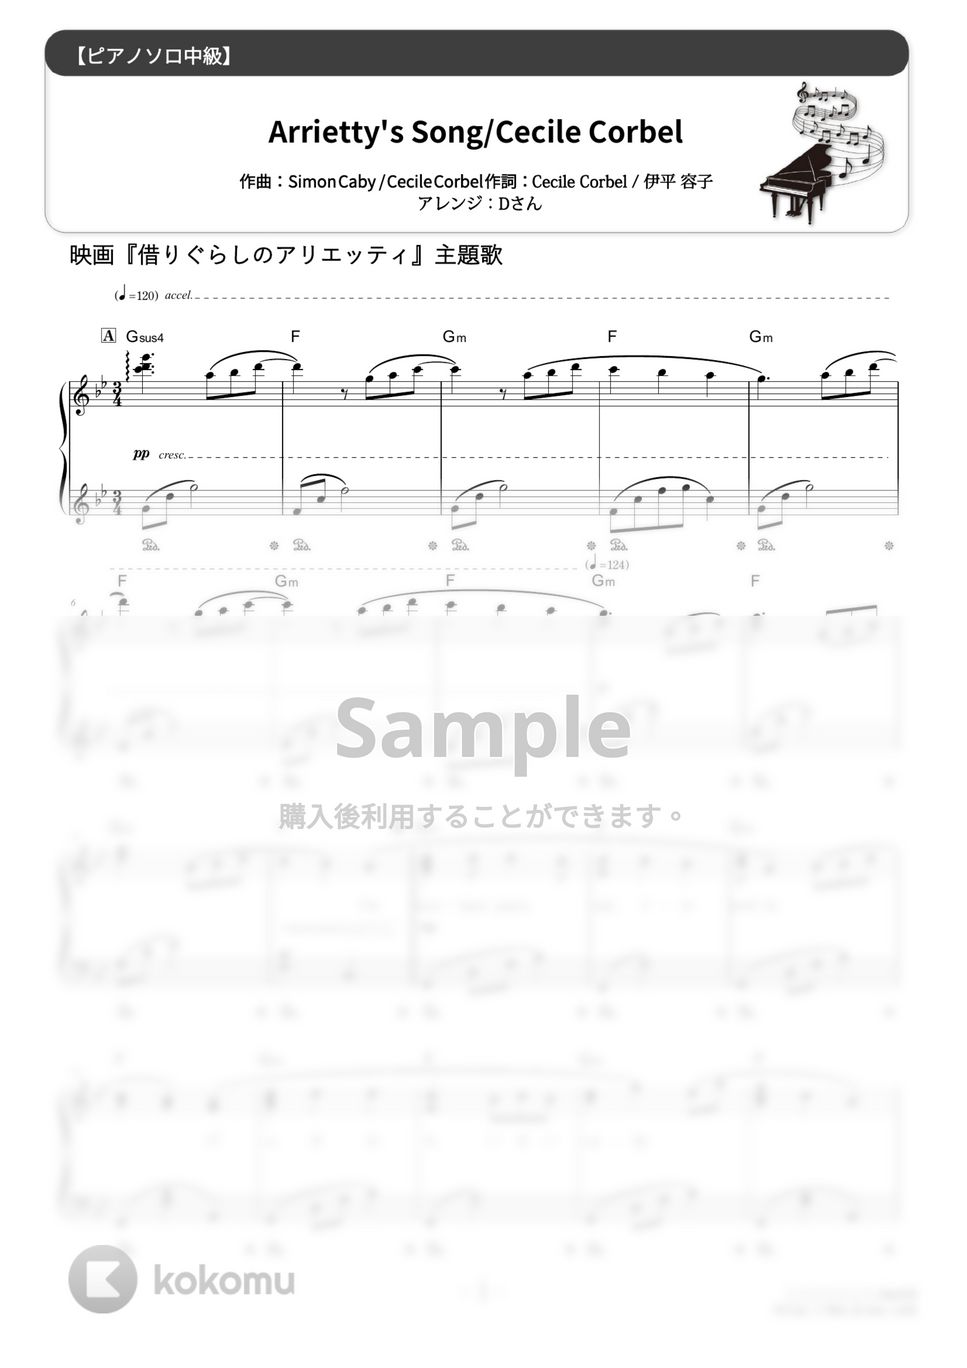 セシル・コルベル - Arrietty's Song (難易度:★★★☆☆/歌詞・コード・ペダル付き) by Dさん